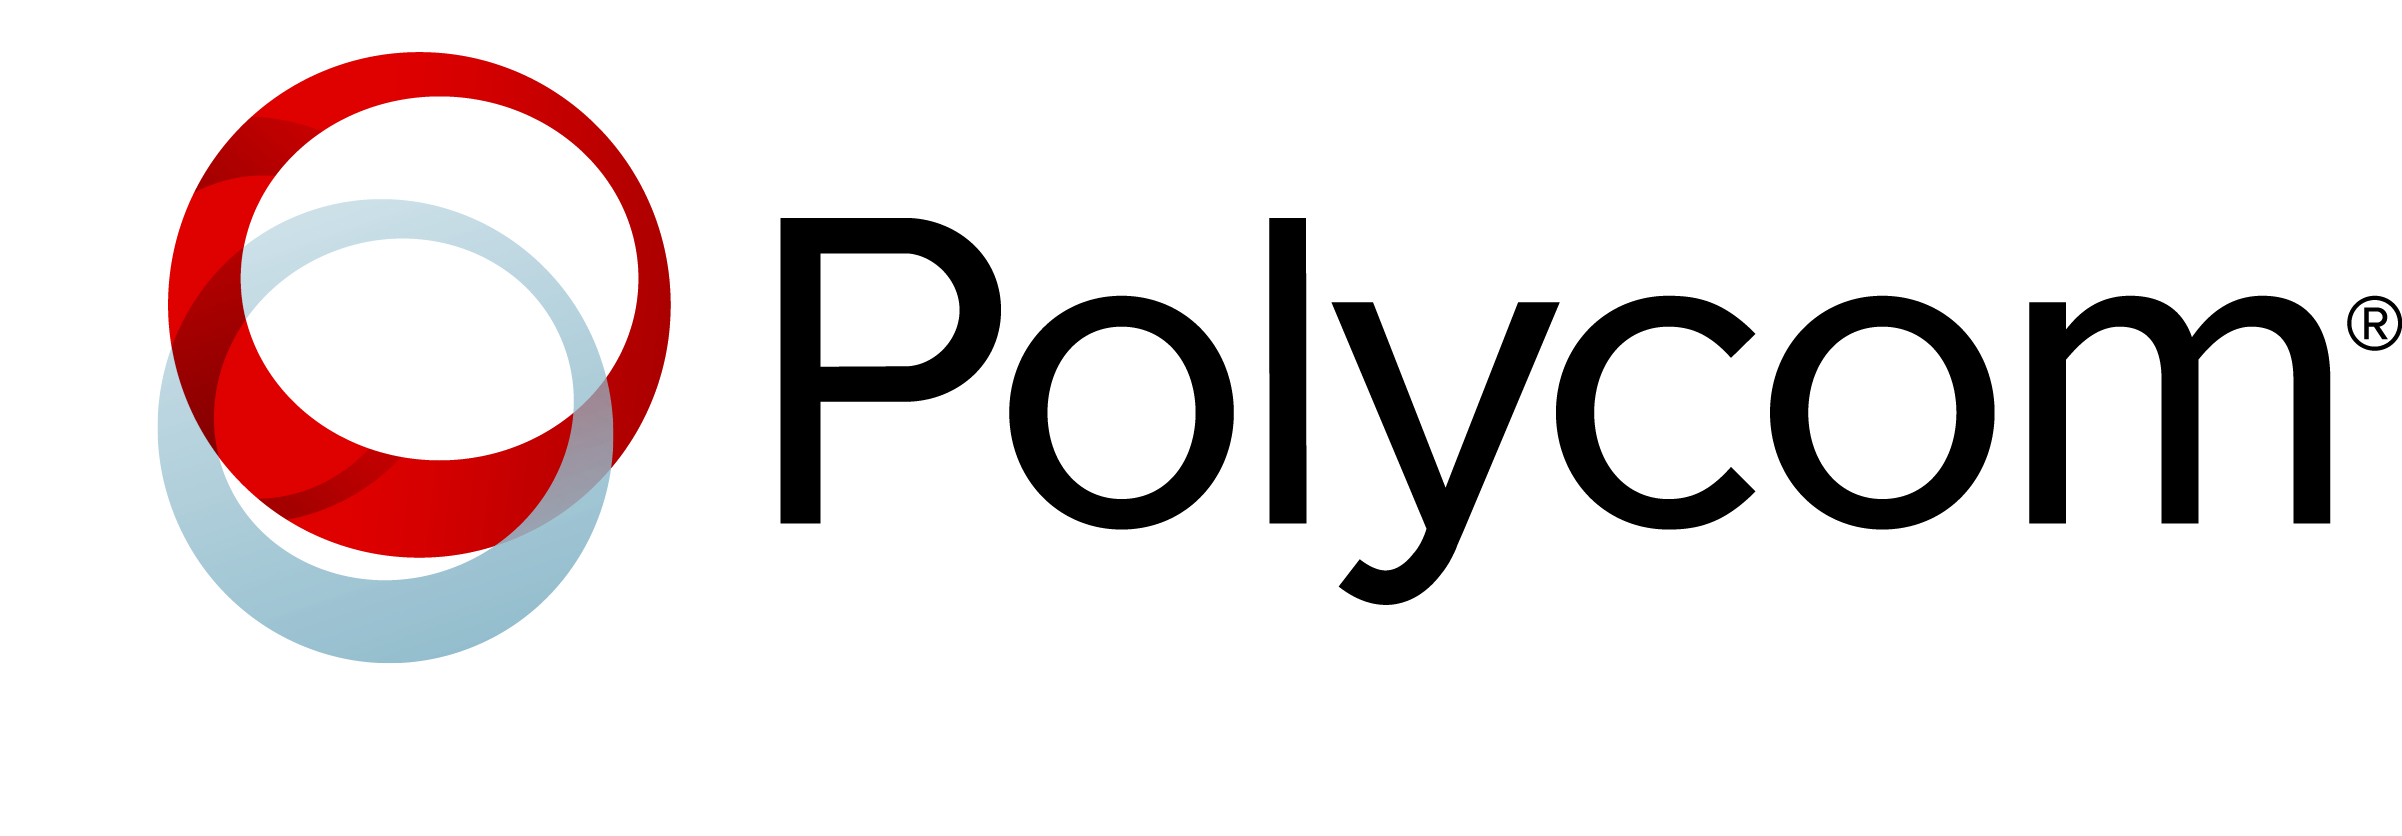 Polycom Logo photo - 1